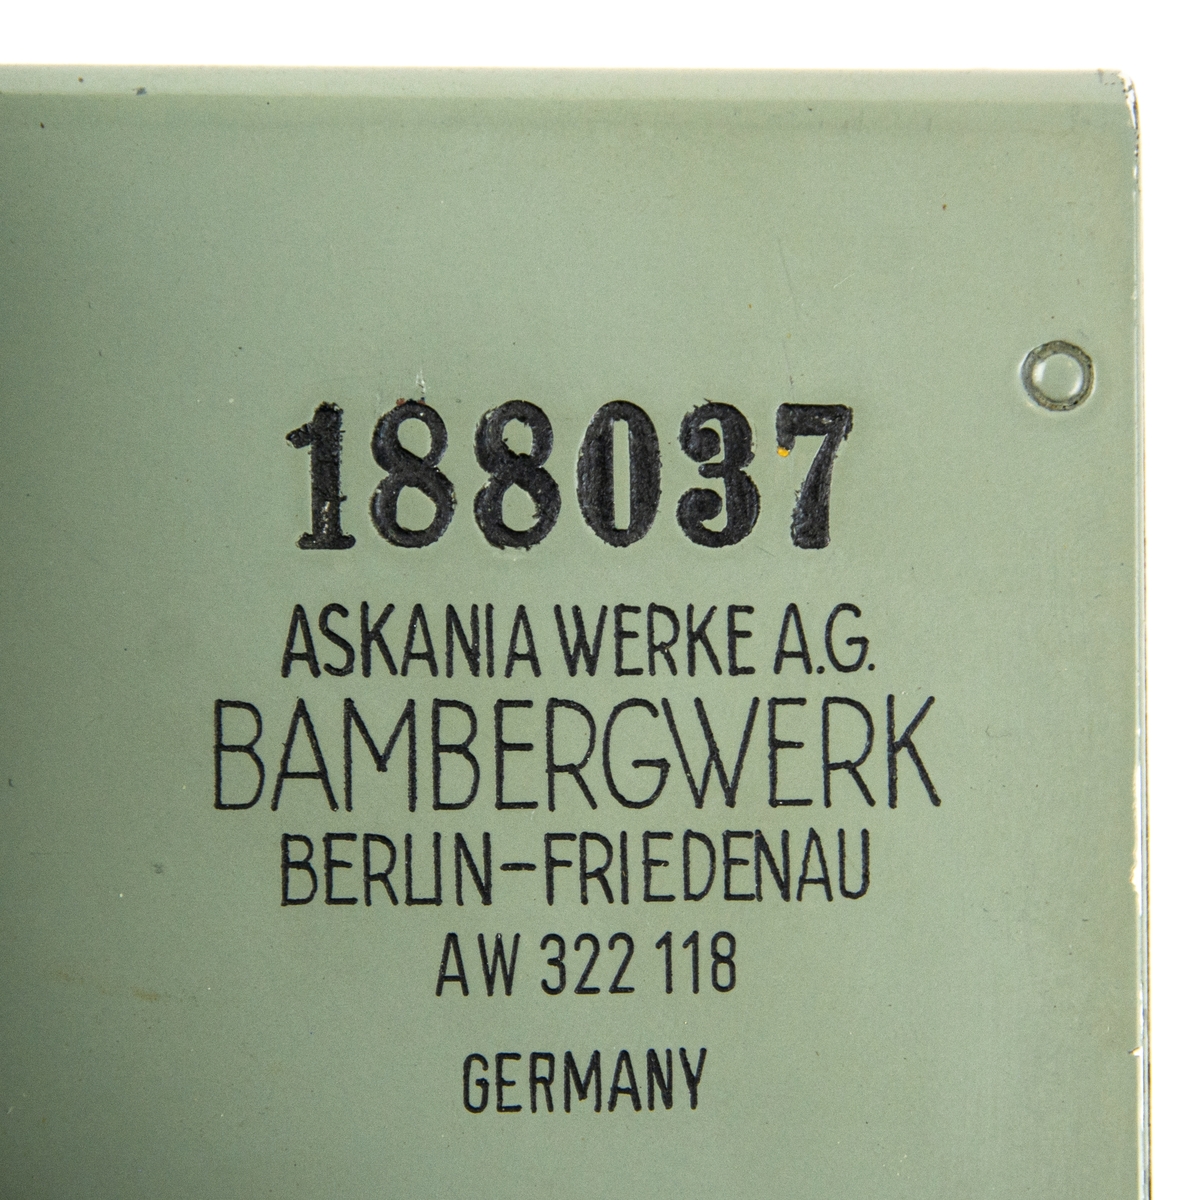 Filmtolkningsapparat tillverkad av Askania i Berlin. Förvaras i tillhörande trälåda gråmålad märkt 188037. Ej komplett saknas delar enligt inventarielista.